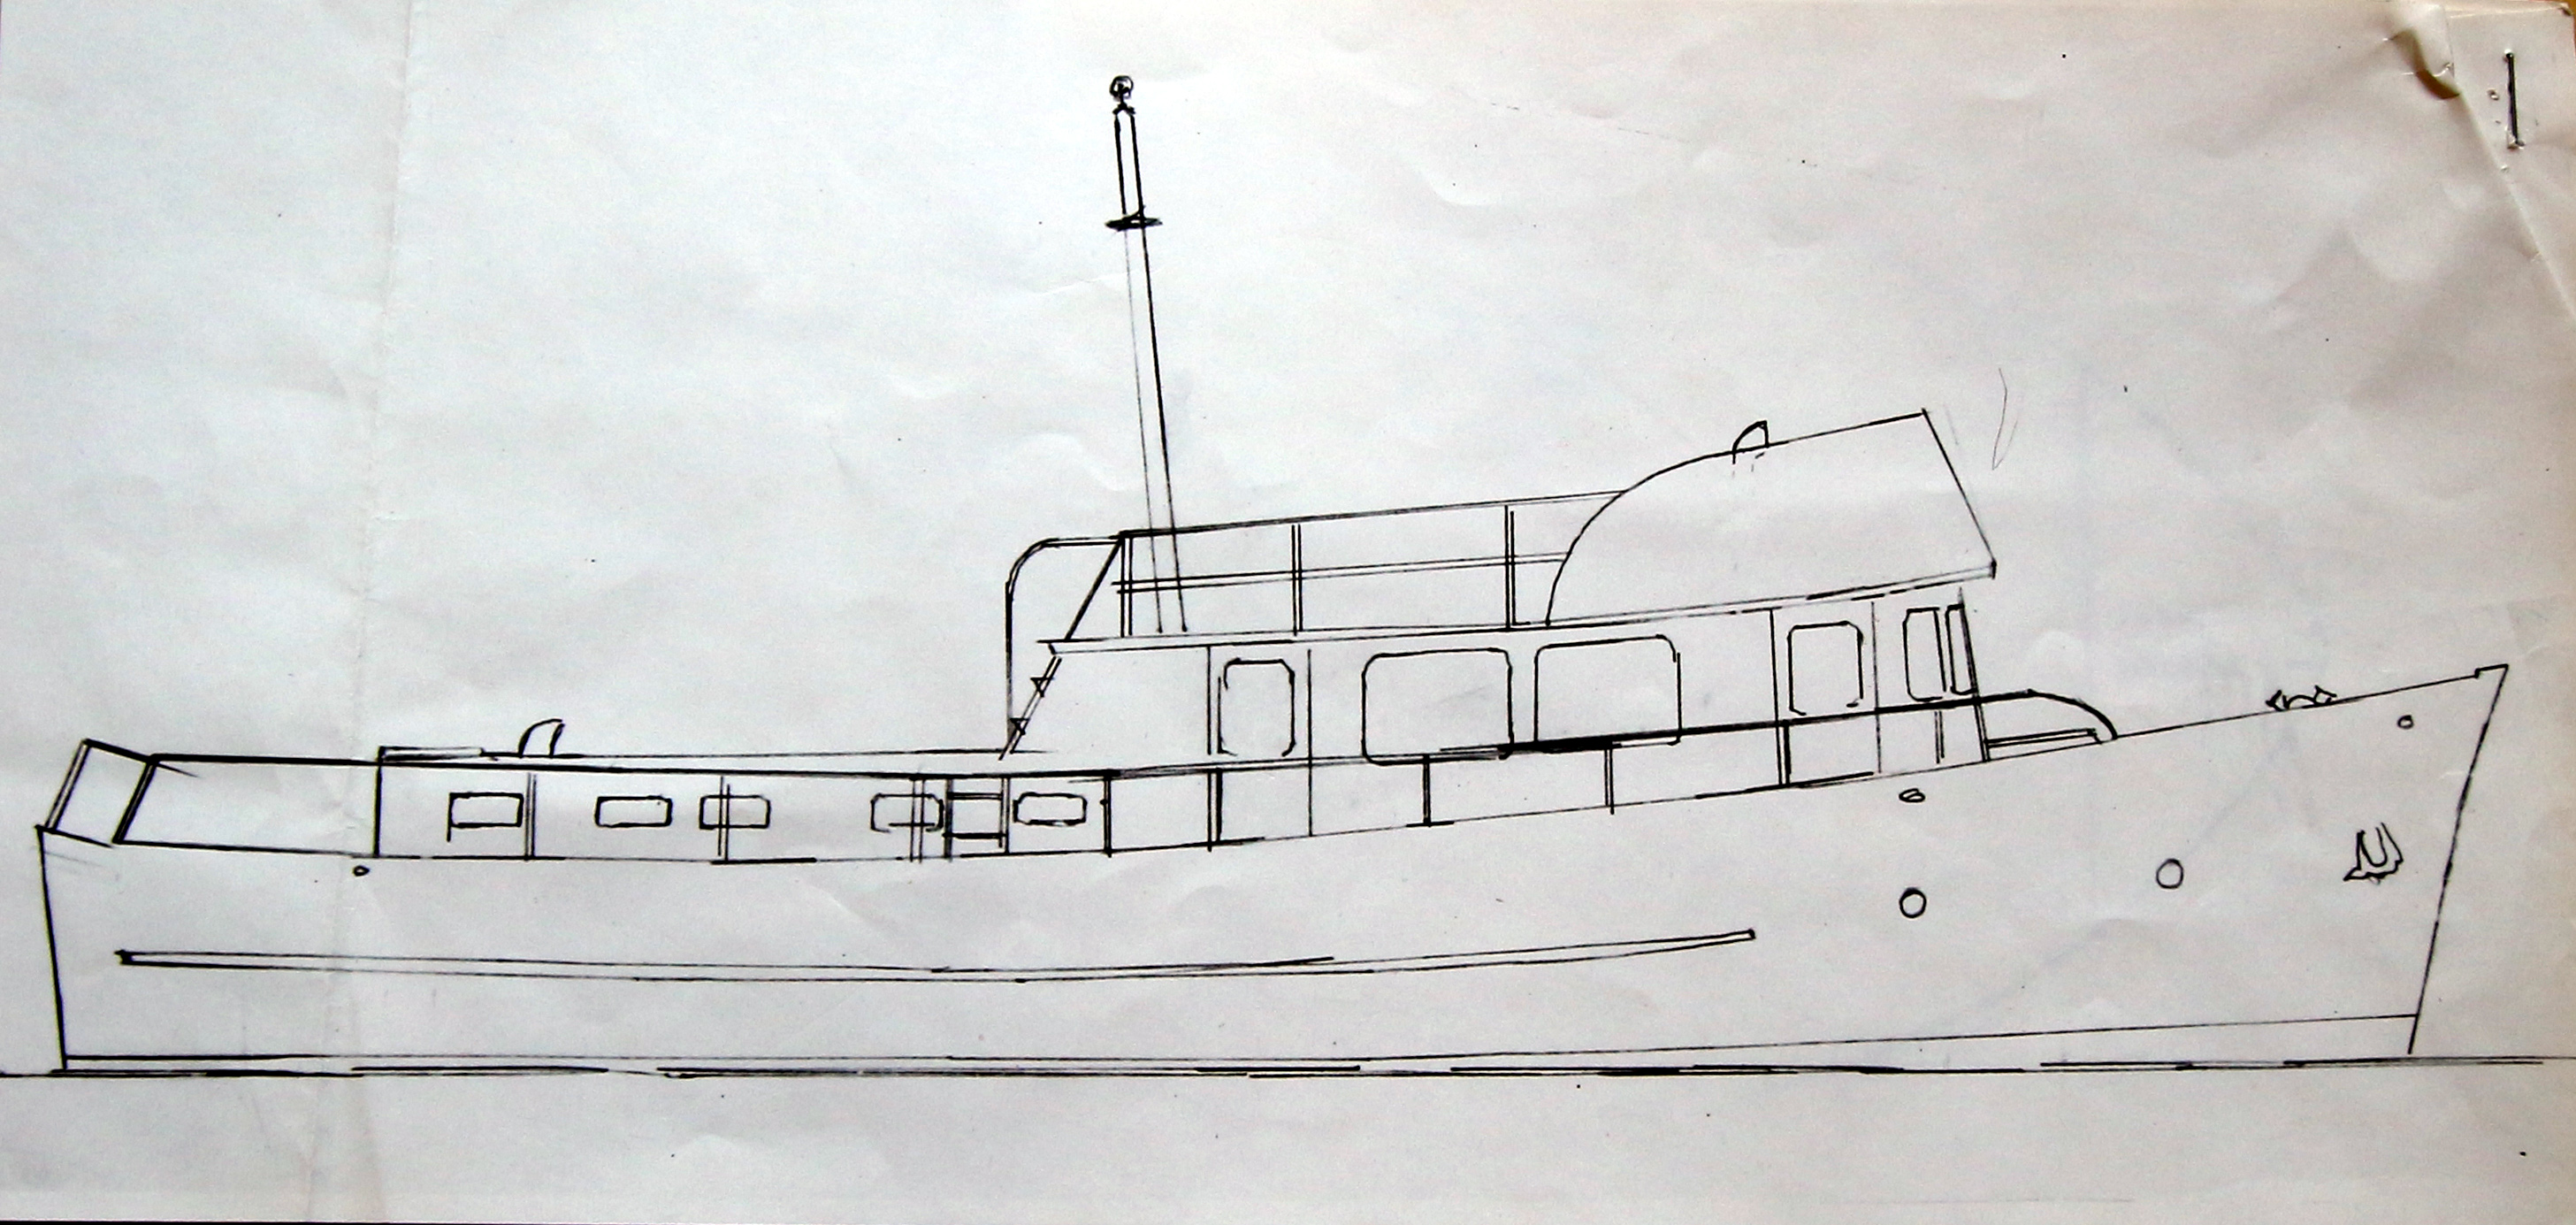 Dessin d’un bateau de plaisance vue de profil, montrant la coque, la cabine et le mat.